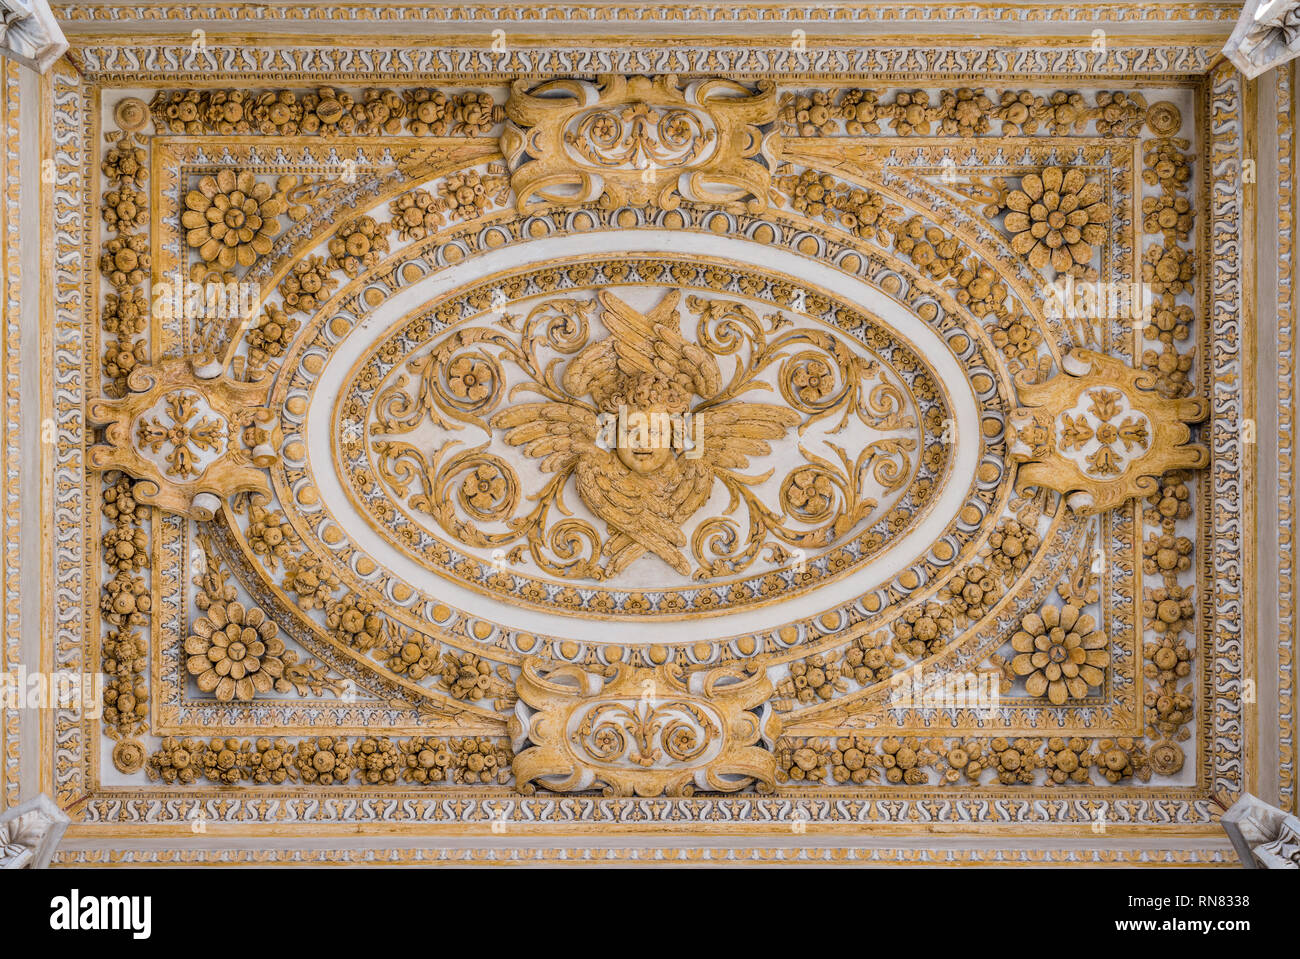 Décoration en stuc dans le plafond du portique dans la Basilique Saint-Pierre à Rome, Italie. Banque D'Images